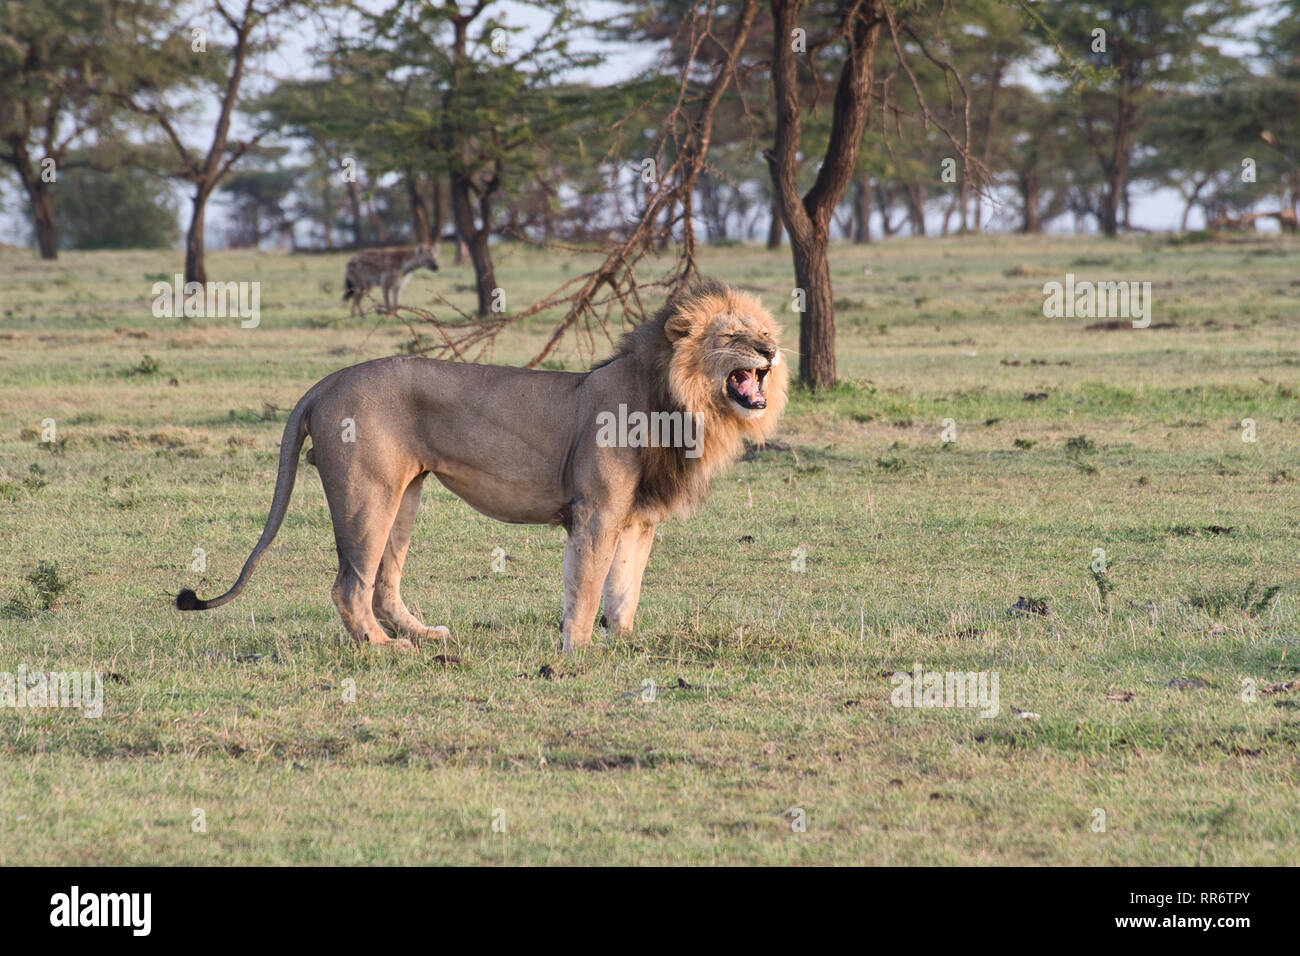 Erwachsene männliche Löwe (Panthera leo) Aufruf aus anderen Raubtieren zu warnen, insbesondere Tüpfelhyänen, von denen eine im Hintergrund gesehen werden kann. Stockfoto